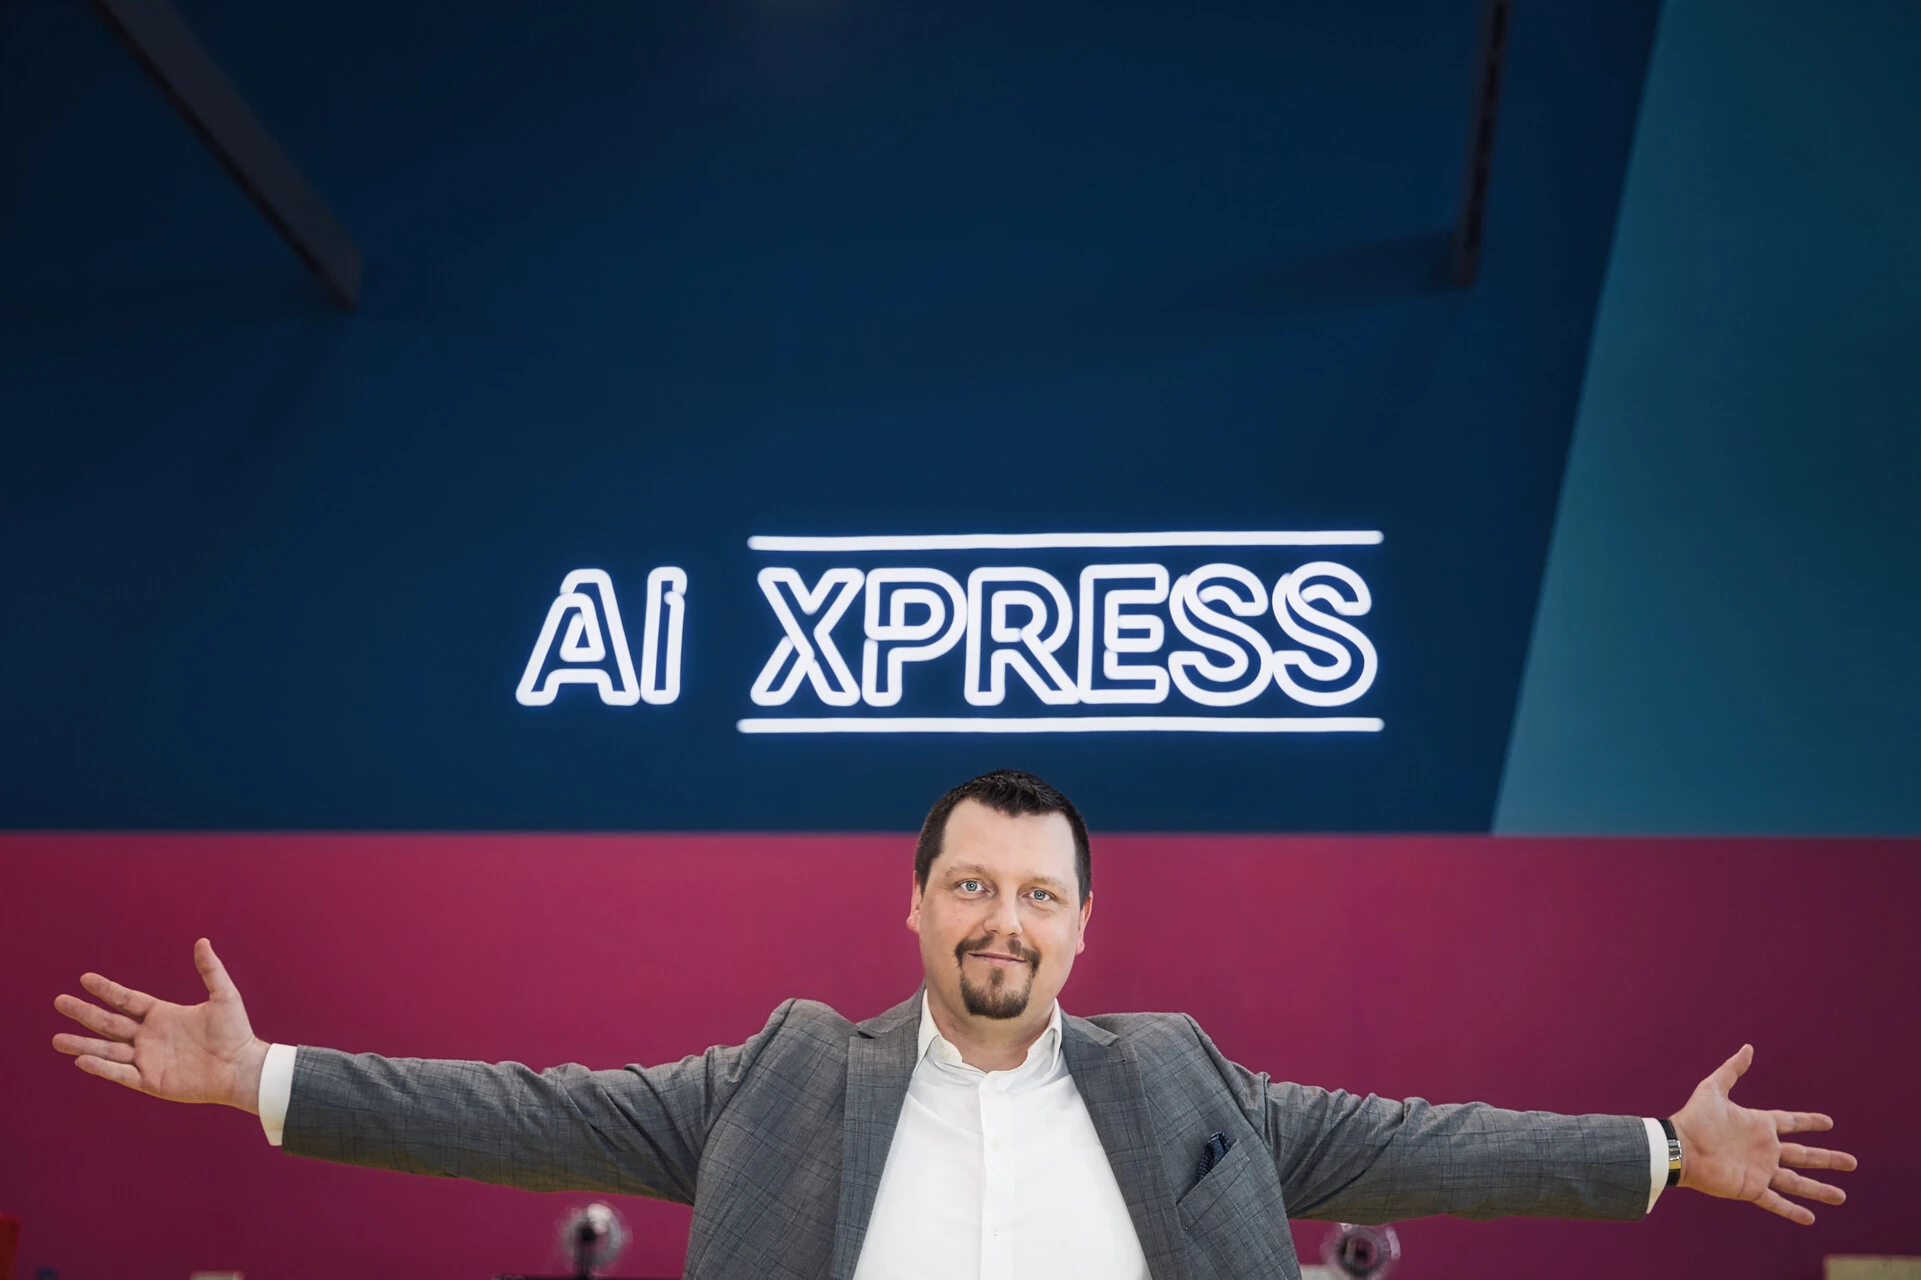 Martin Jäger, Experte für Mitarbeitergewinnung und Leadership, begrüßt Sie mit offenen Armen im AI Xpress, dem kreativen Hotspot für den Austausch und die Entwicklung im Bereich Künstliche Intelligenz. Treten Sie ein in eine Welt, in der Innovation und Zusammenarbeit auf dem KI Roundtable lebendig werden.